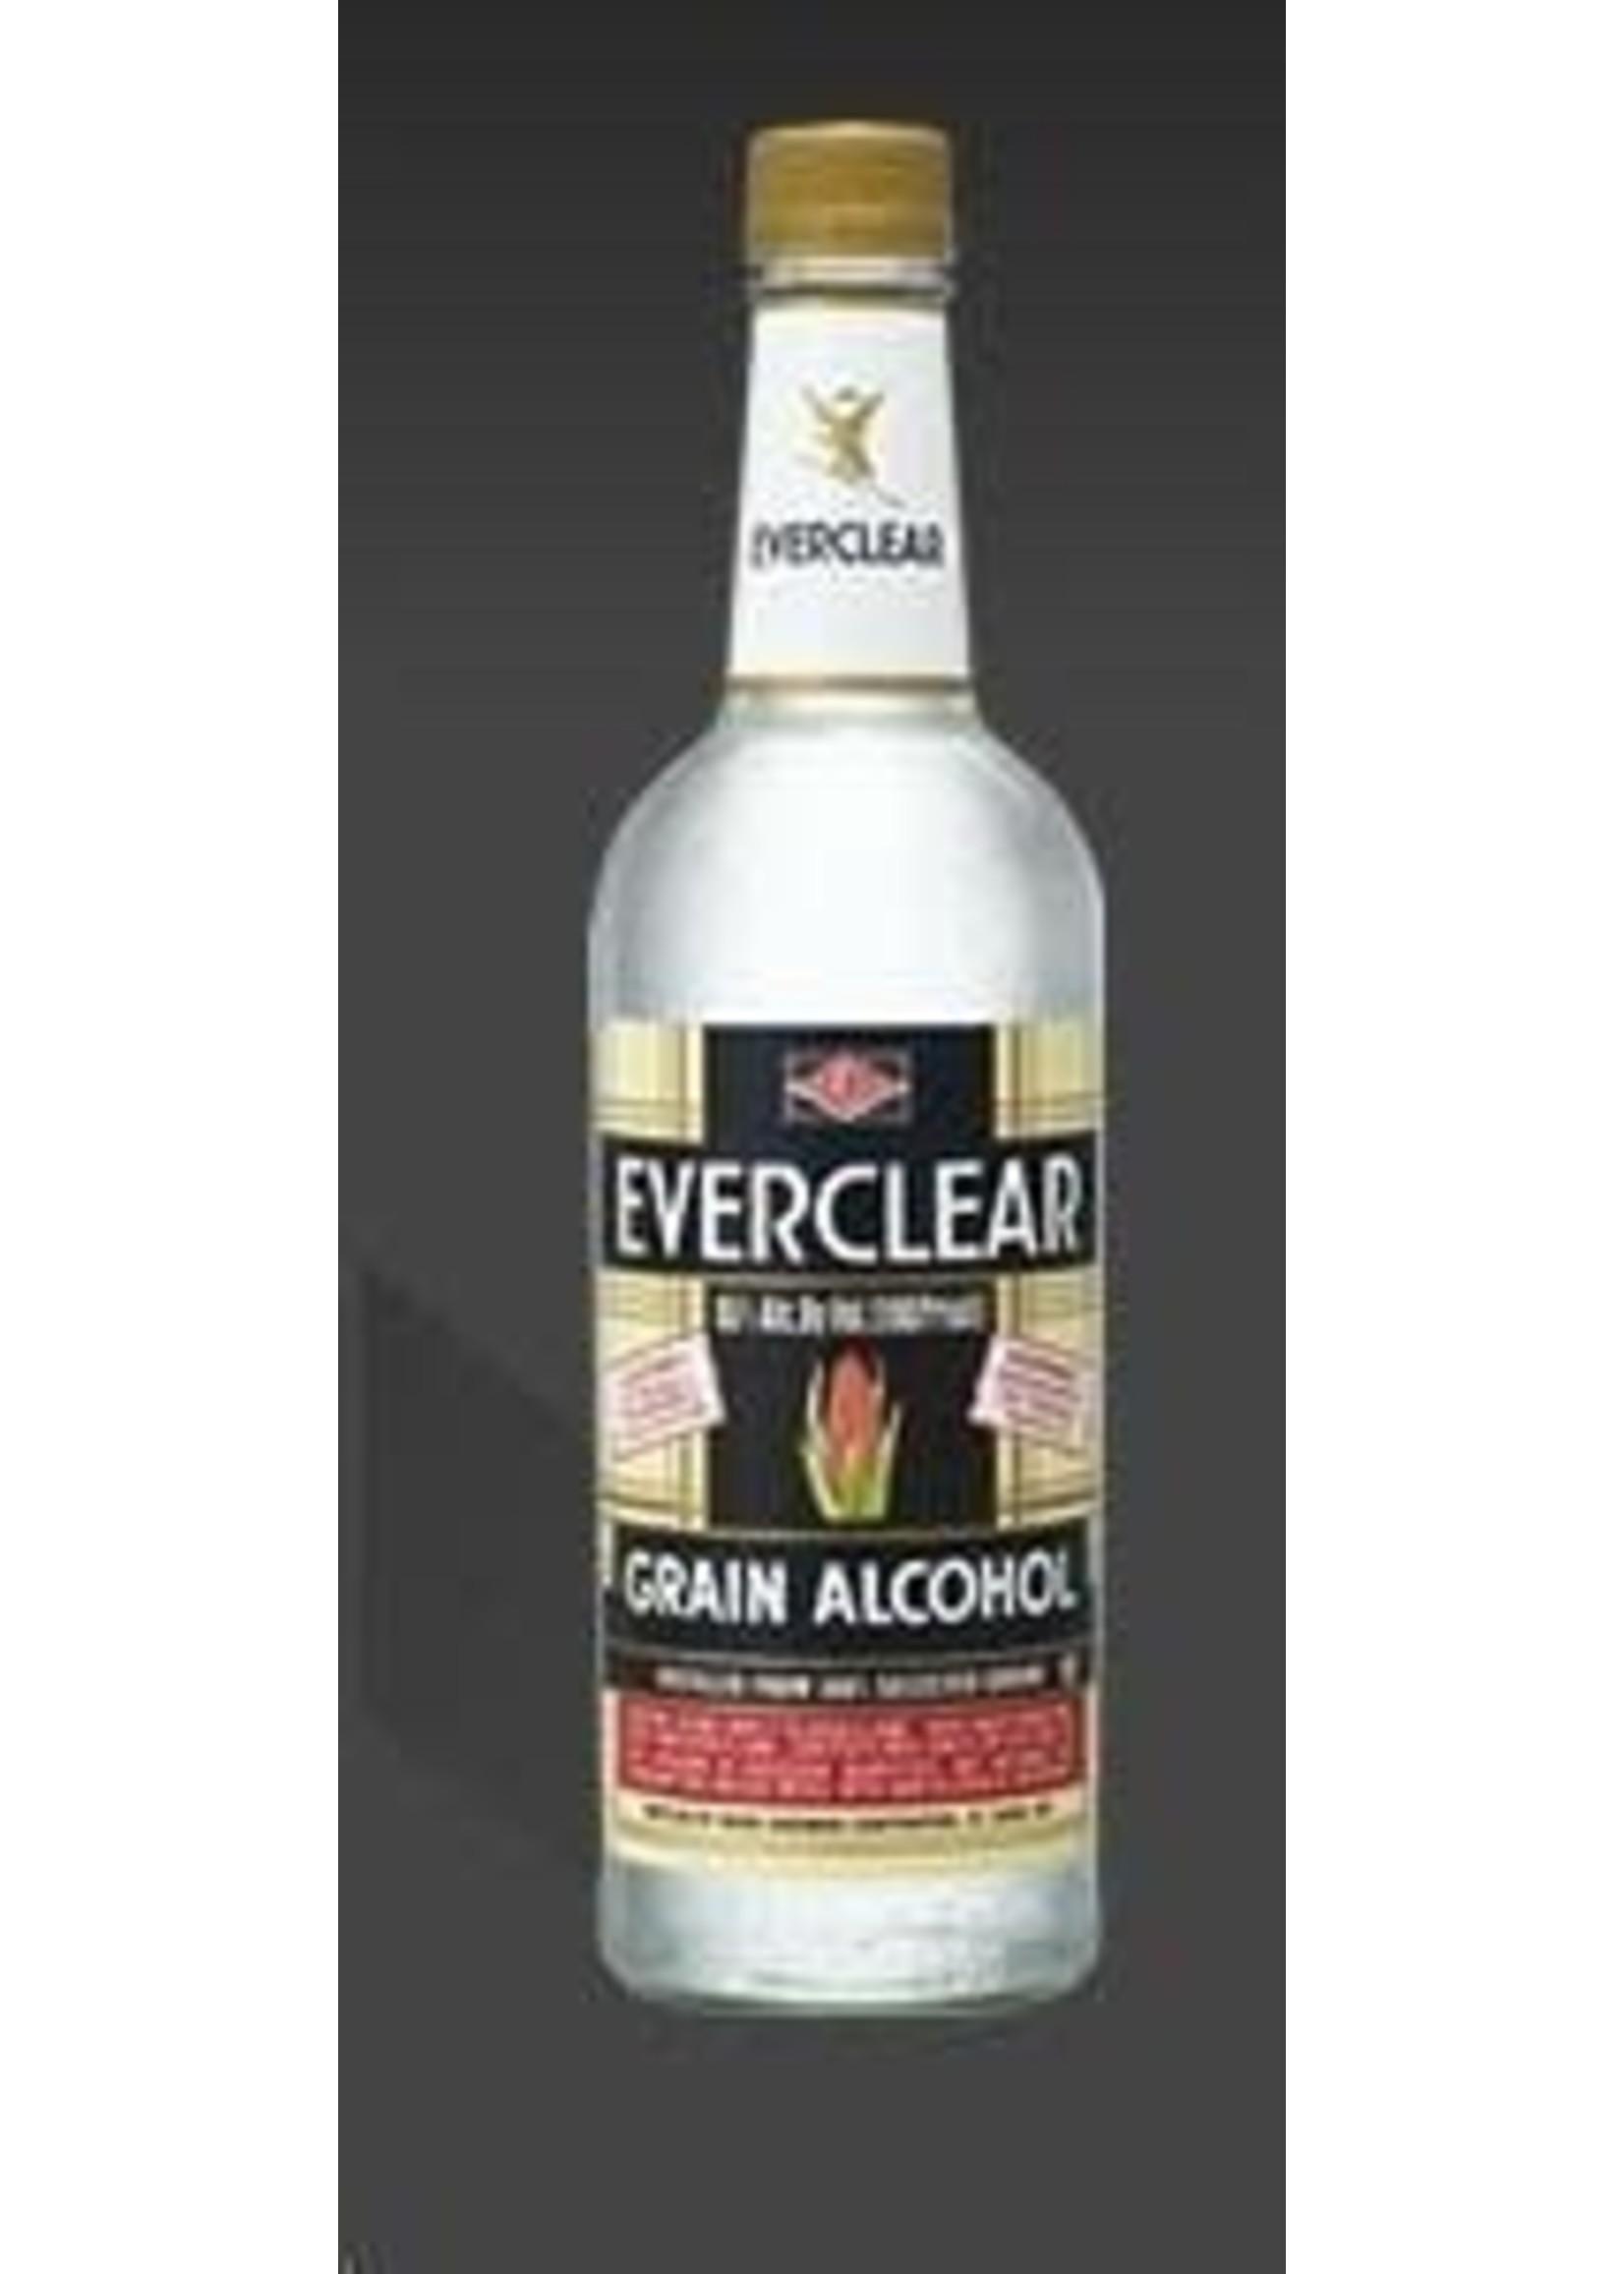 Everclear Everclear / Grain Alcohol 190 proof